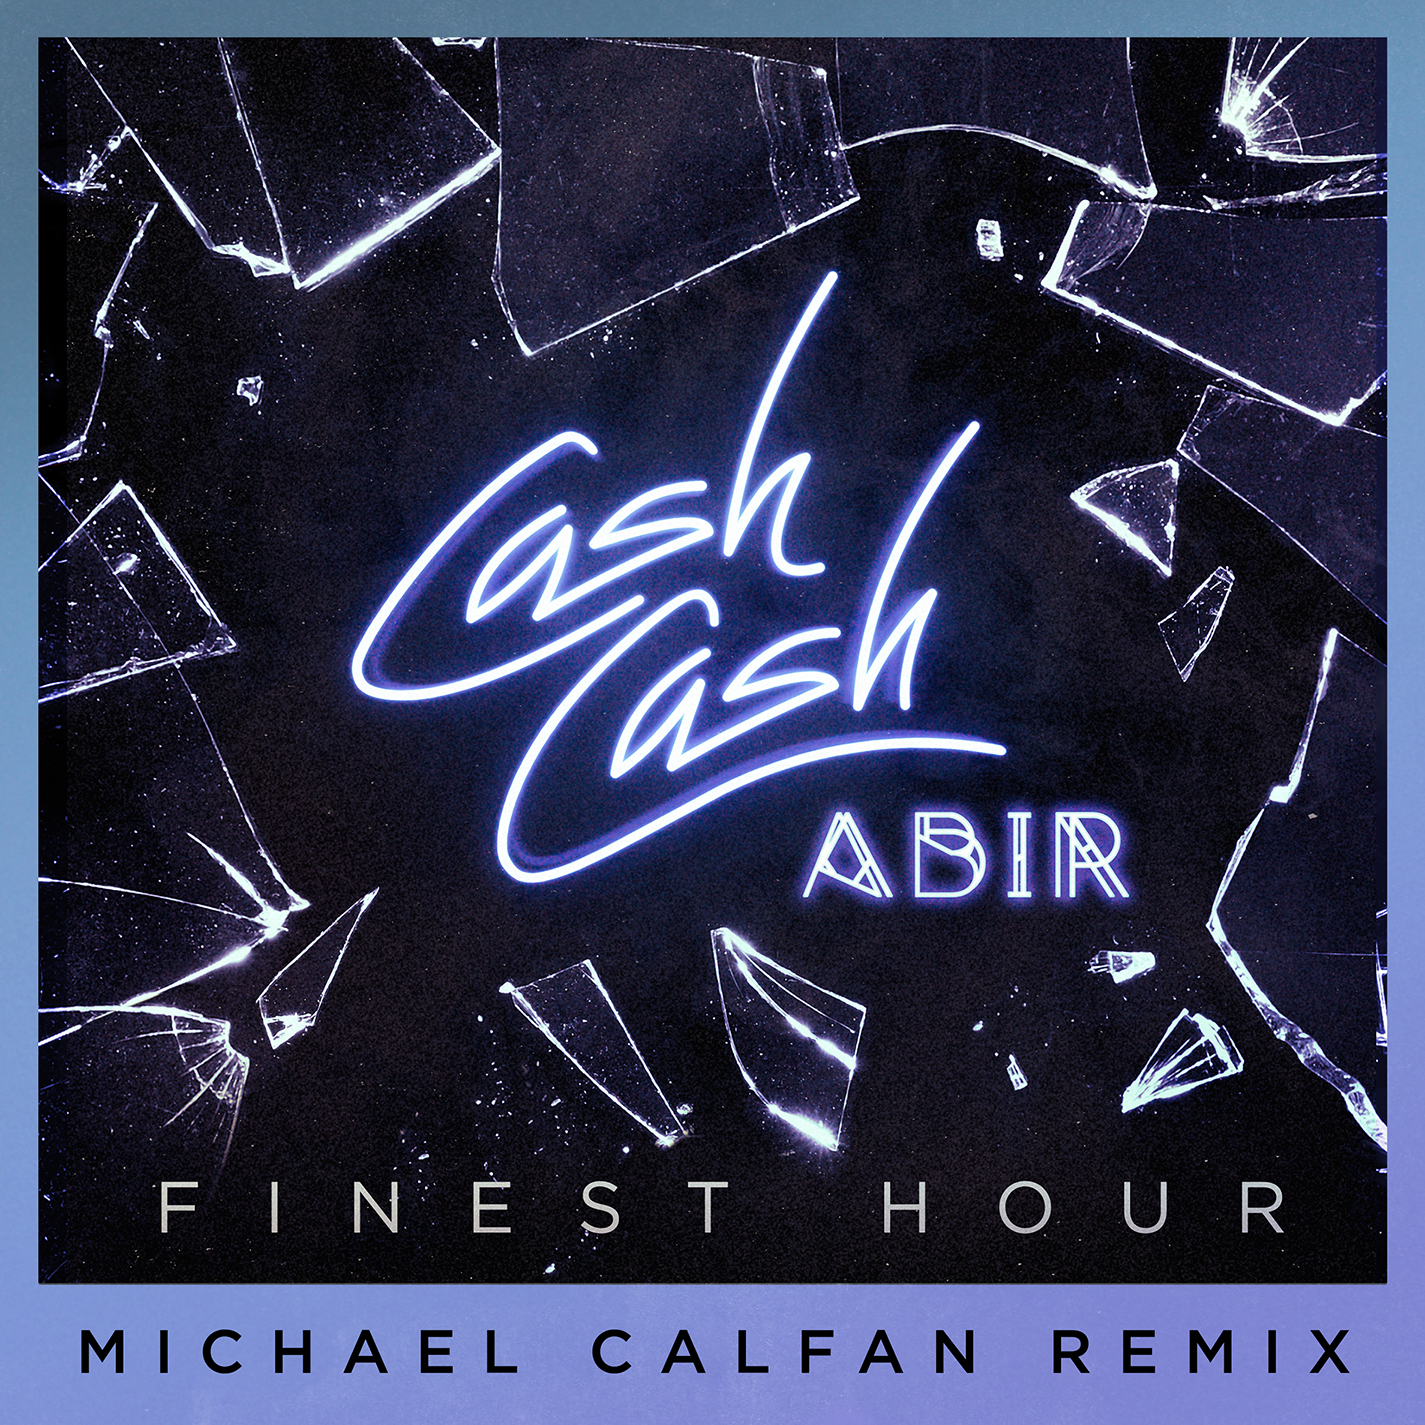 Finest Hour (Michael Calfan Remix)